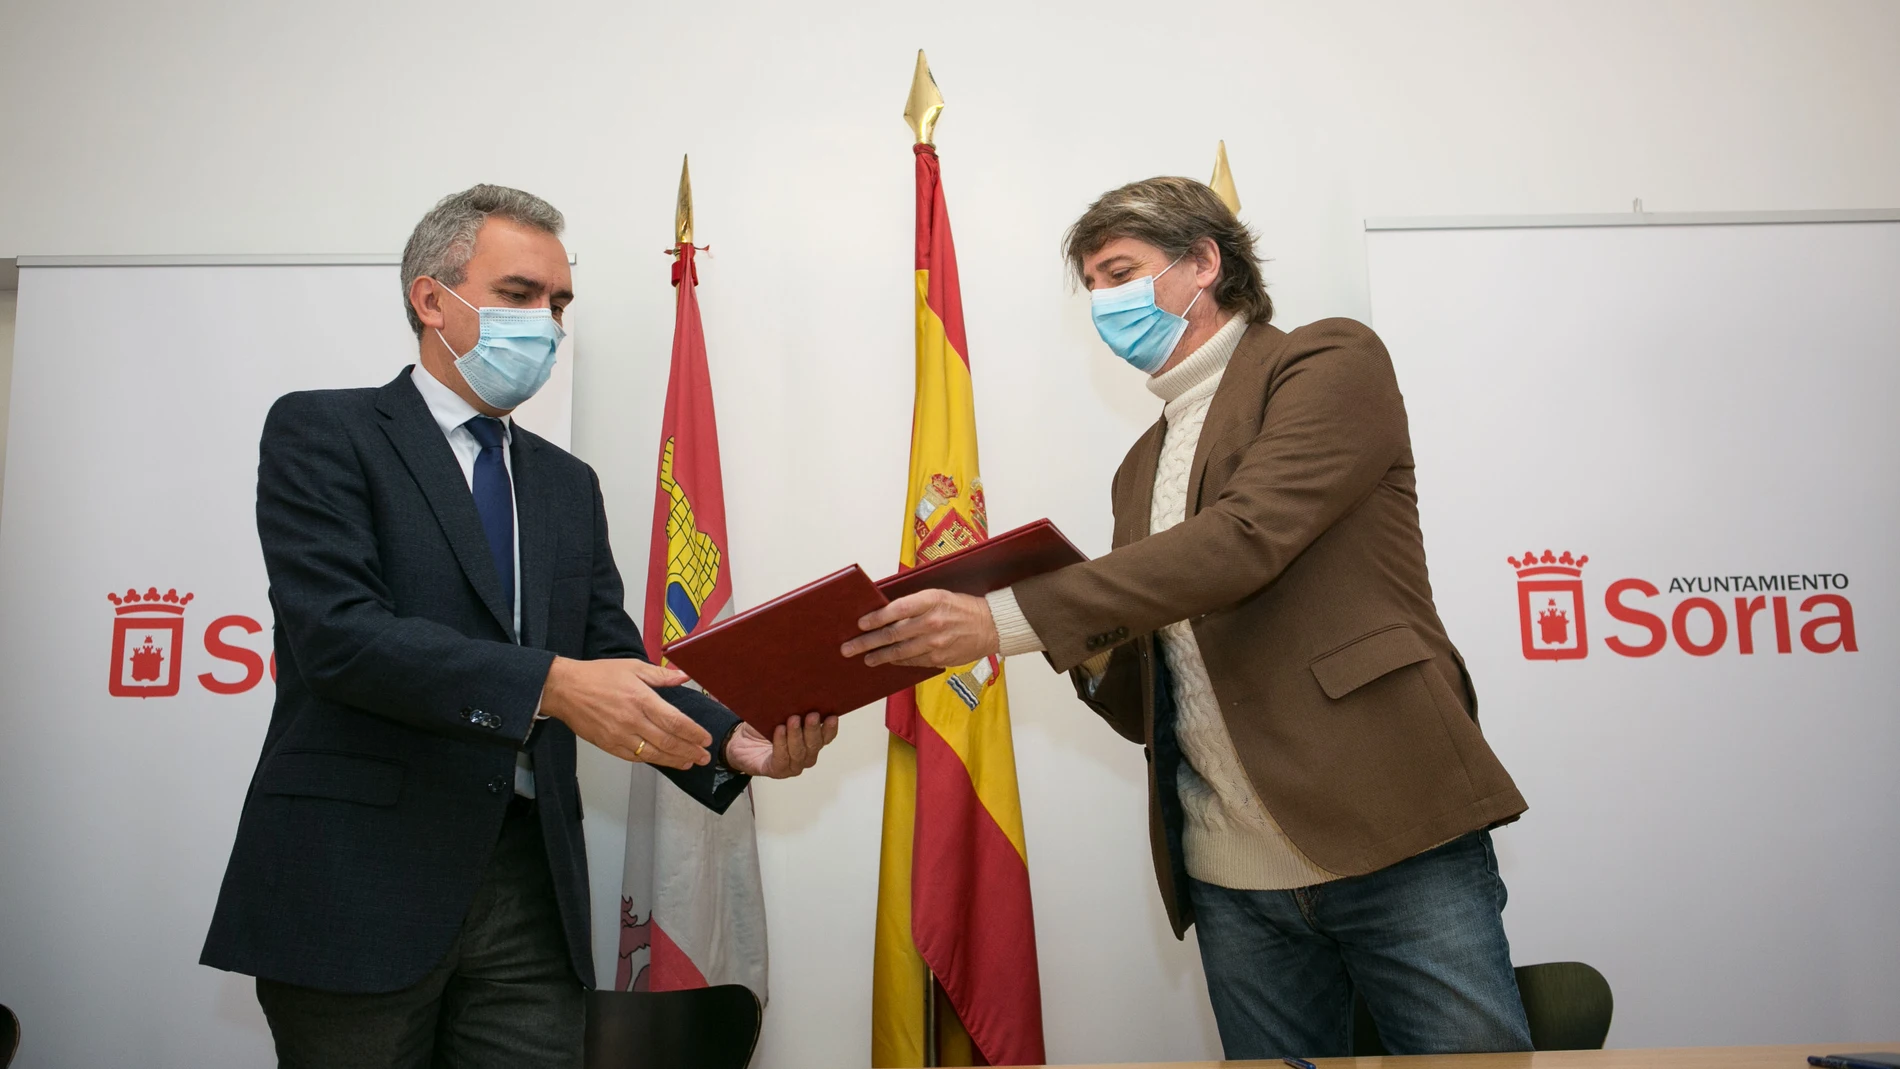 El delegado del Gobierno de España en Castilla y León, Javier Izquierdo; y el alcalde de Soria, Carlos Martínez, suscriben el acuerdo